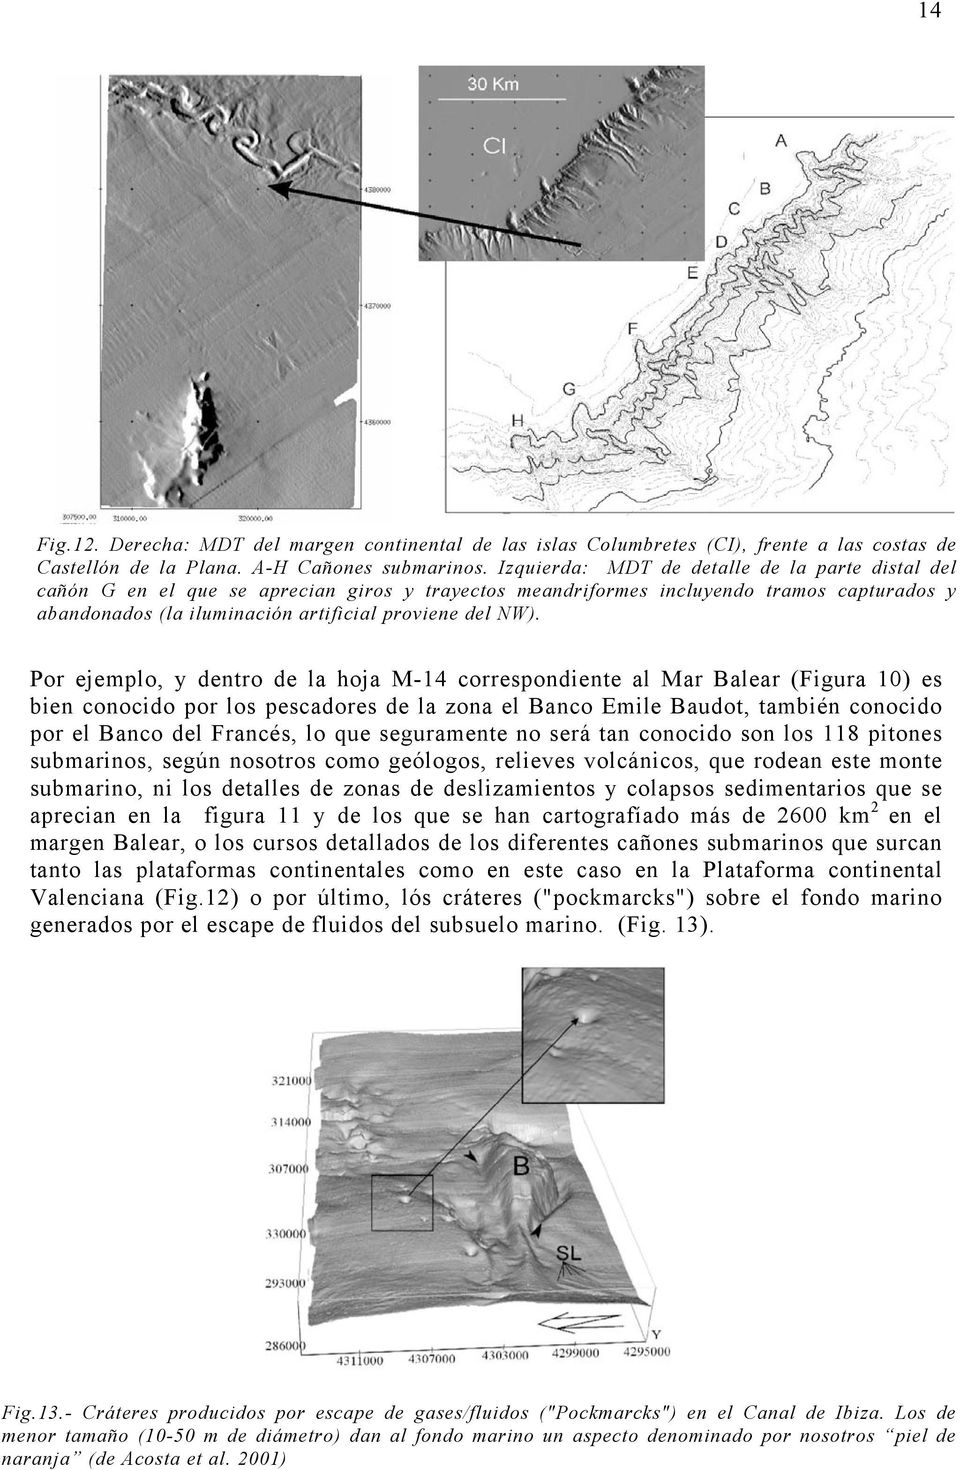 Por ejemplo, y dentro de la hoja M-14 correspondiente al Mar Balear (Figura 10) es bien conocido por los pescadores de la zona el Banco Emile Baudot, también conocido por el Banco del Francés, lo que